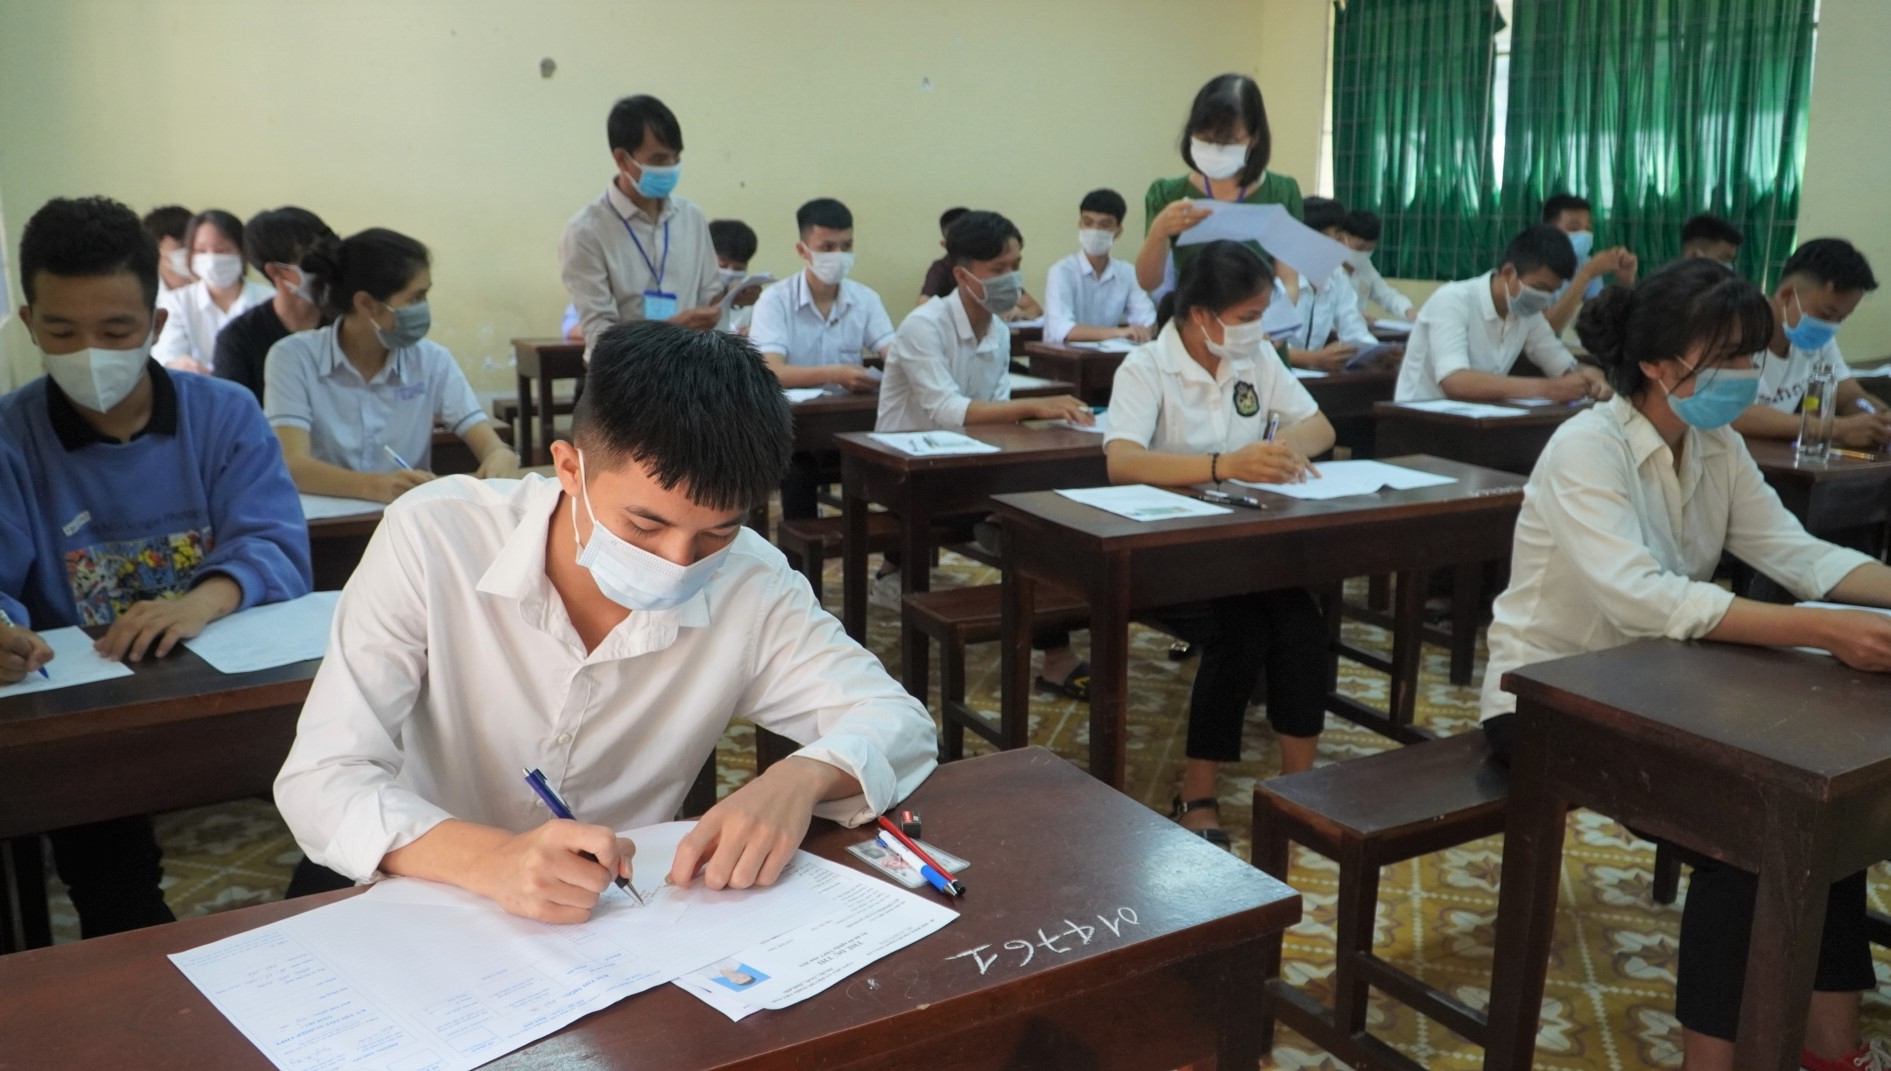 Thí sinh Đắk Lắk thi tốt nghiệp THPT đợt 2 năm 2021 tại Khánh Hòa